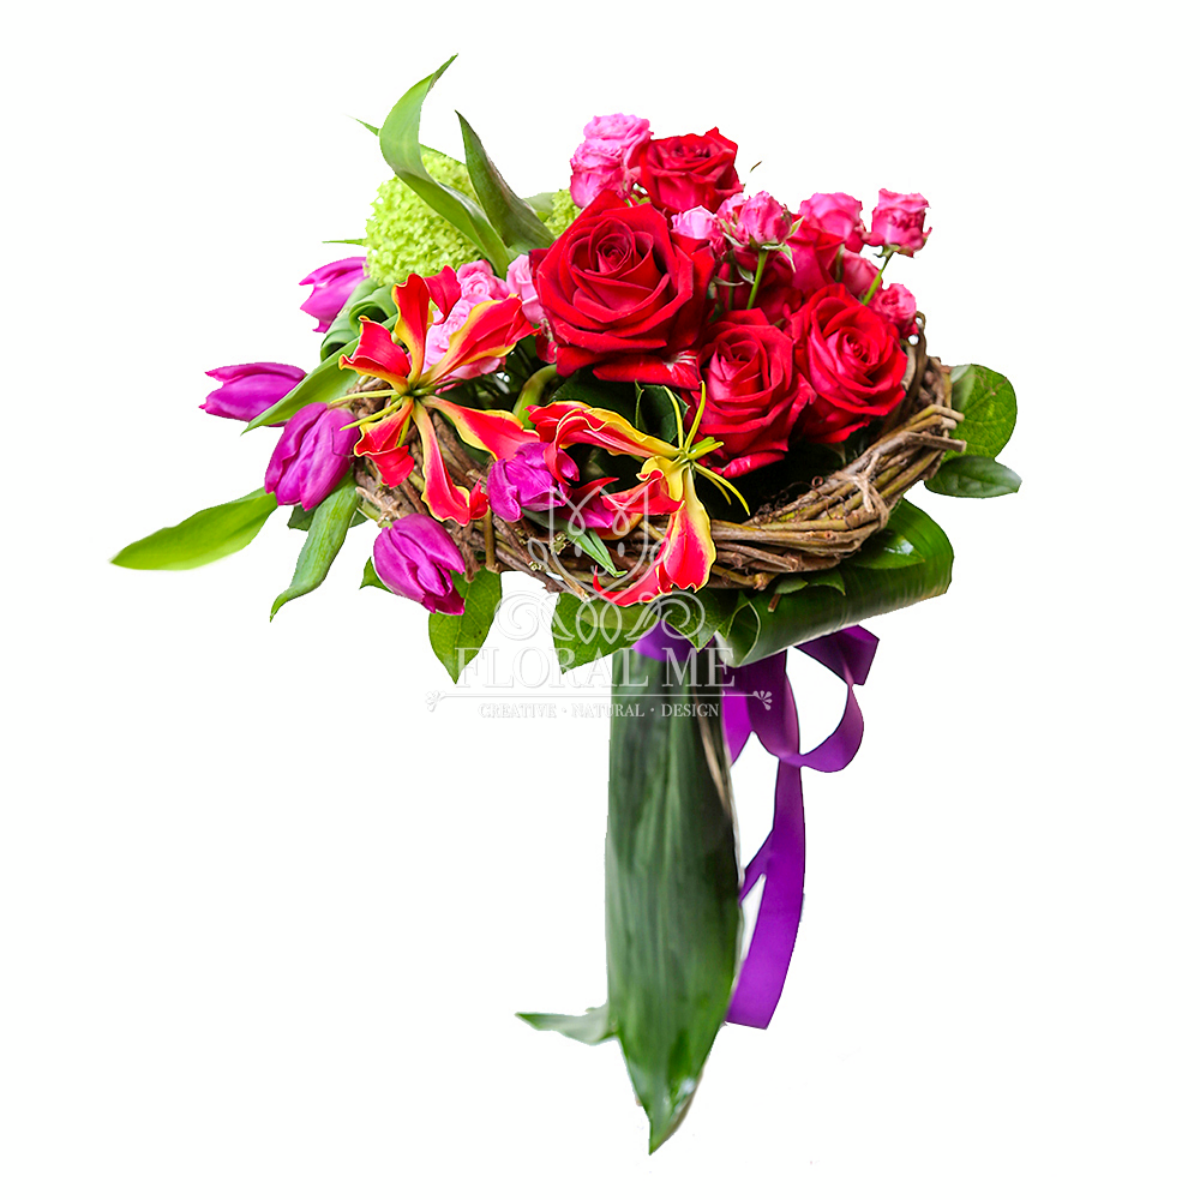 Colorful Rose Bridal Bouquet